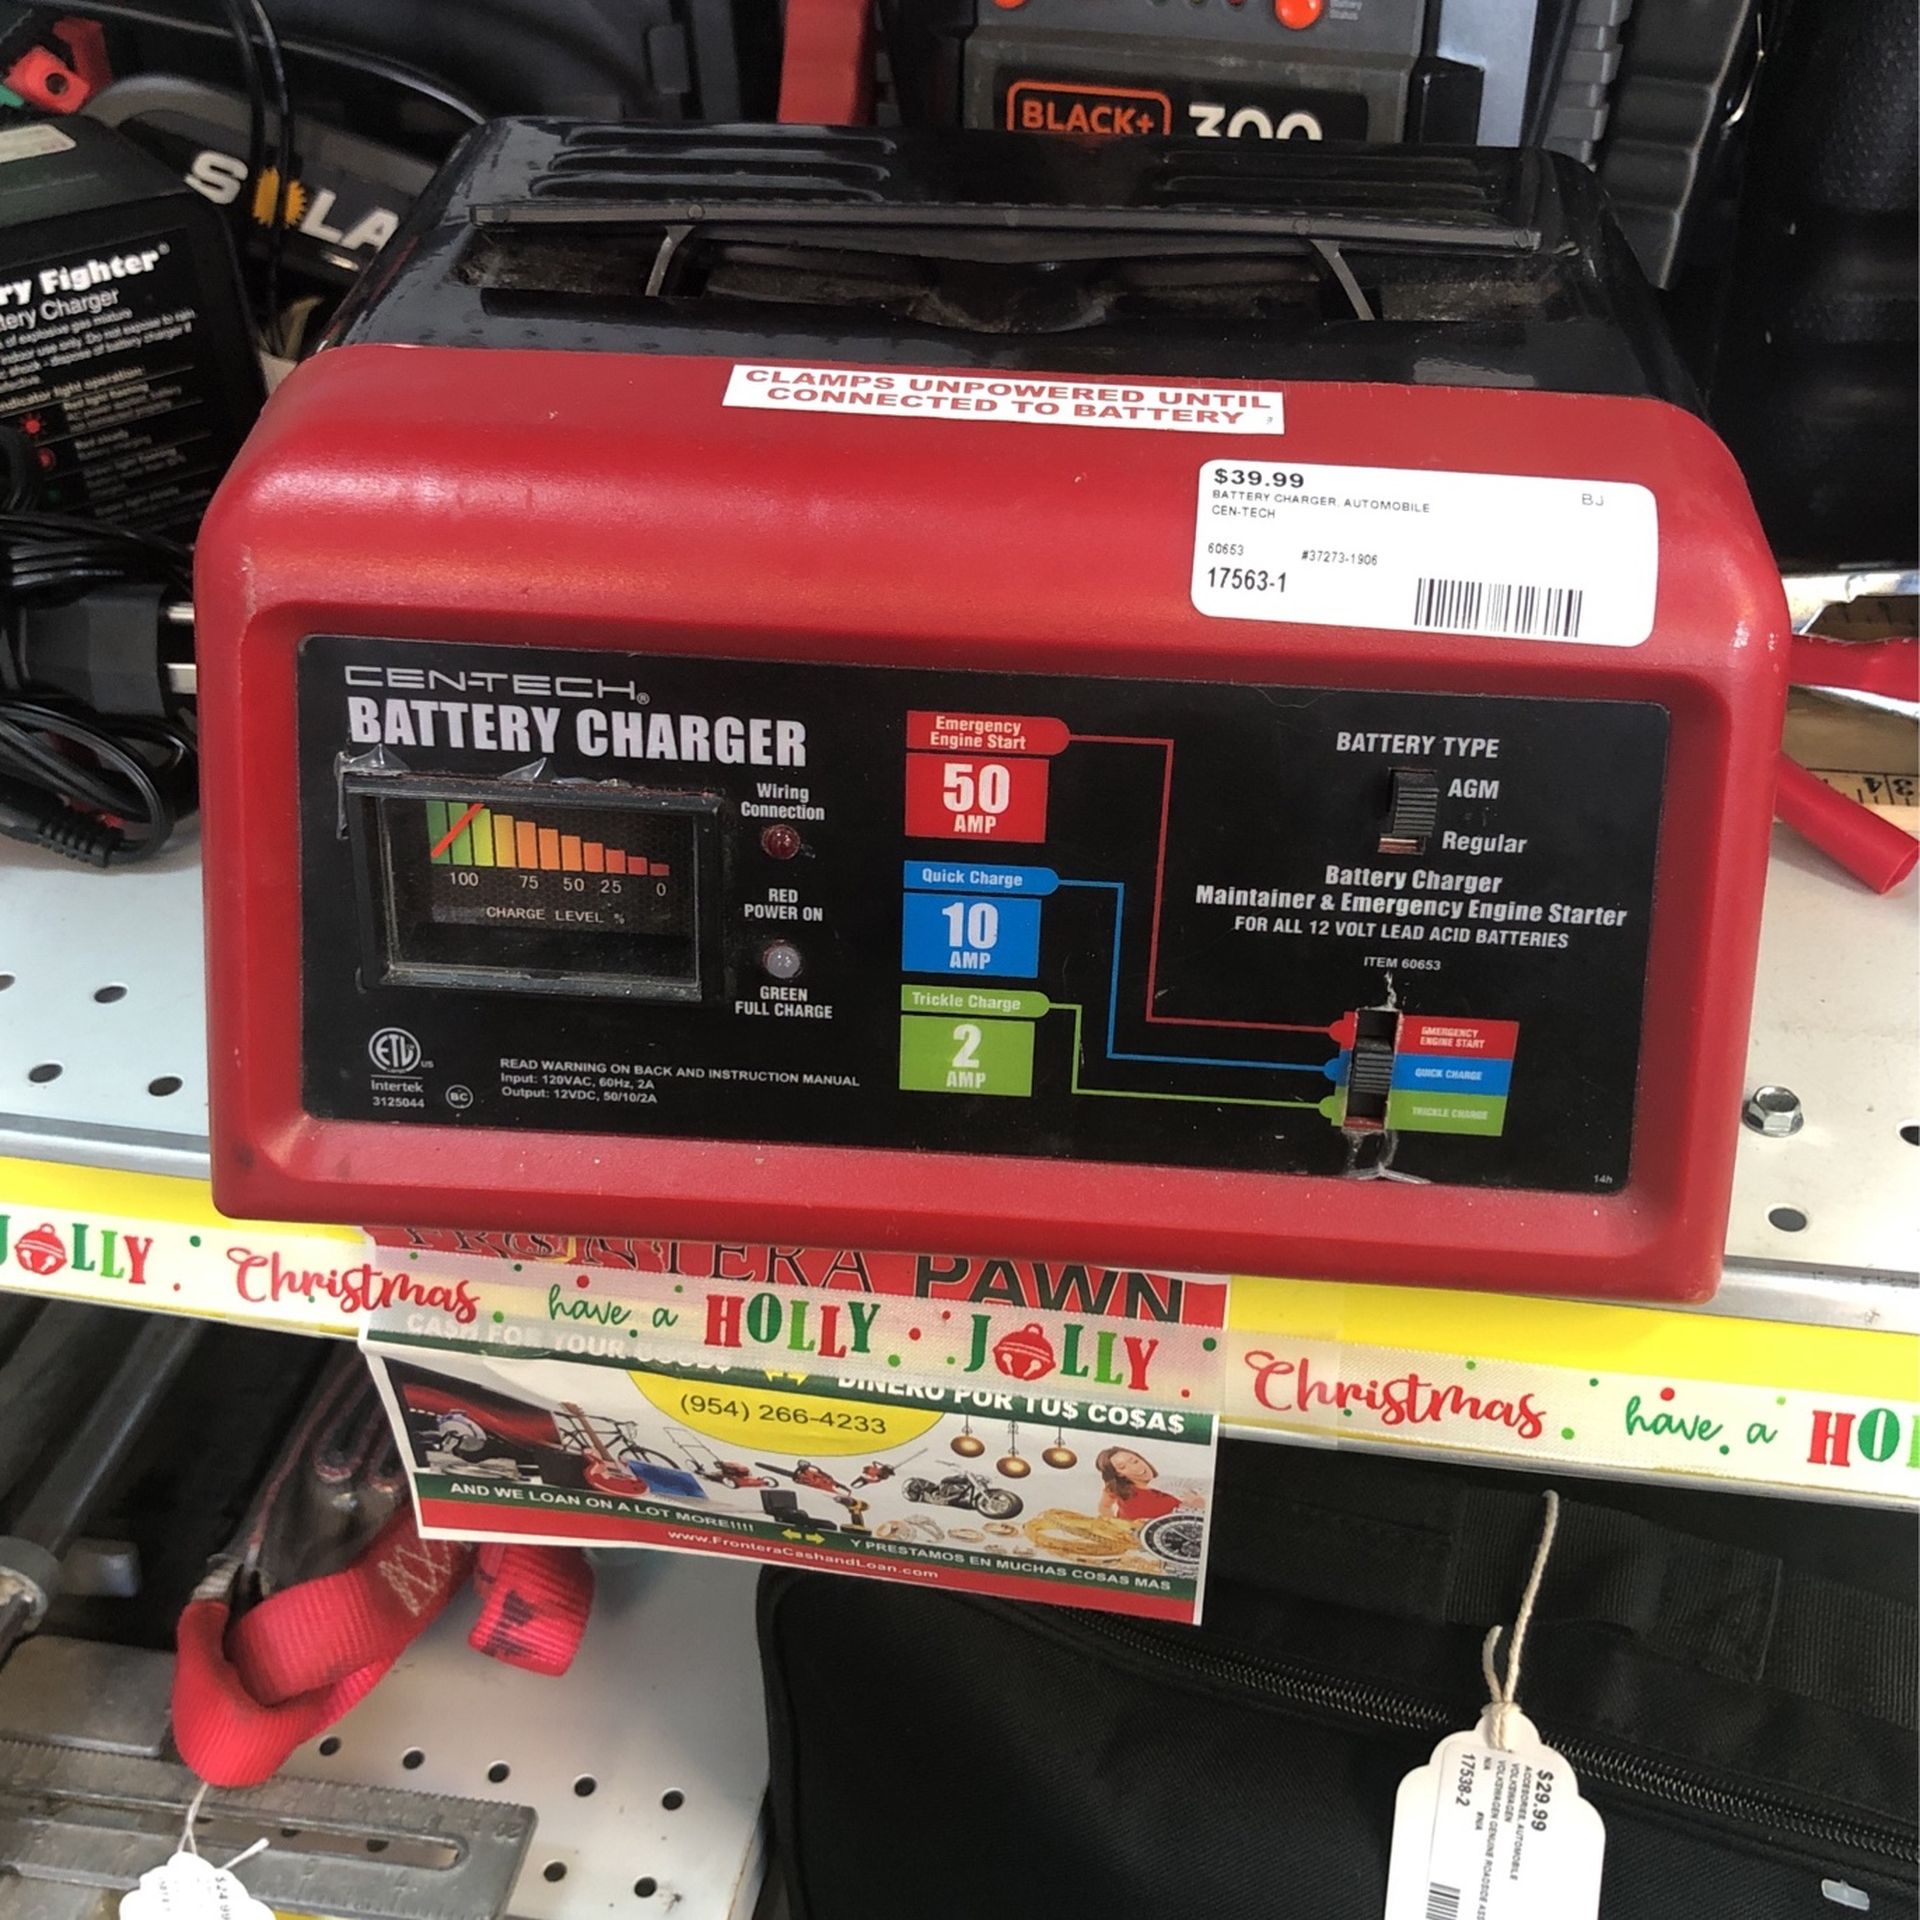 Cen-Tech Battery Charger, $39.99+tax